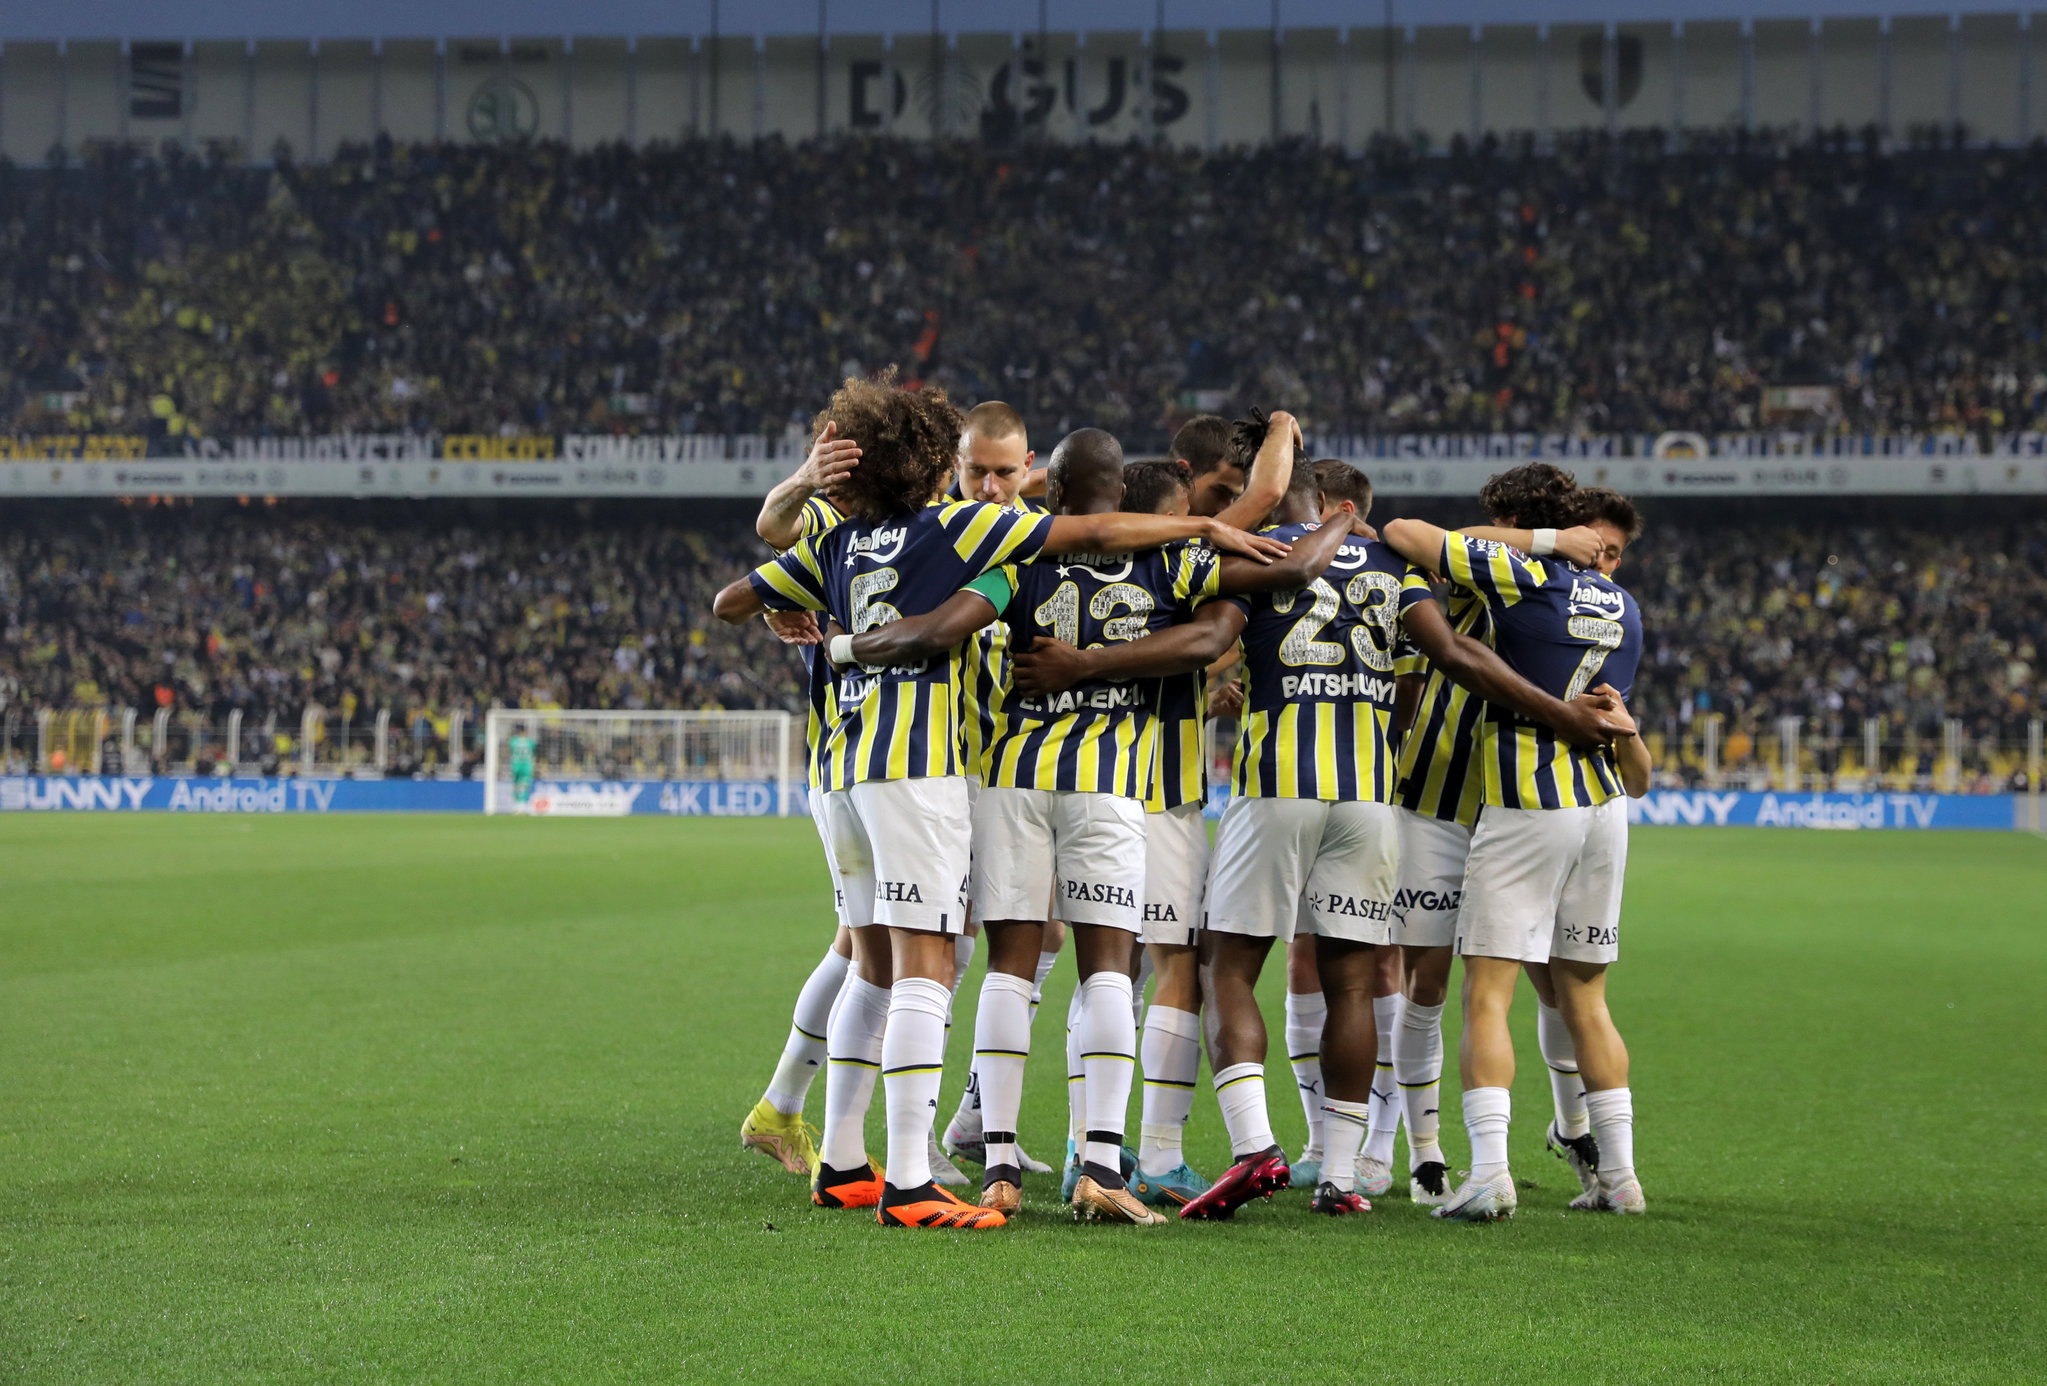 TRANSFER HABERİ: Liverpool’dan Fenerbahçe’ye geliyor! Bu ismi kimse duymamıştı